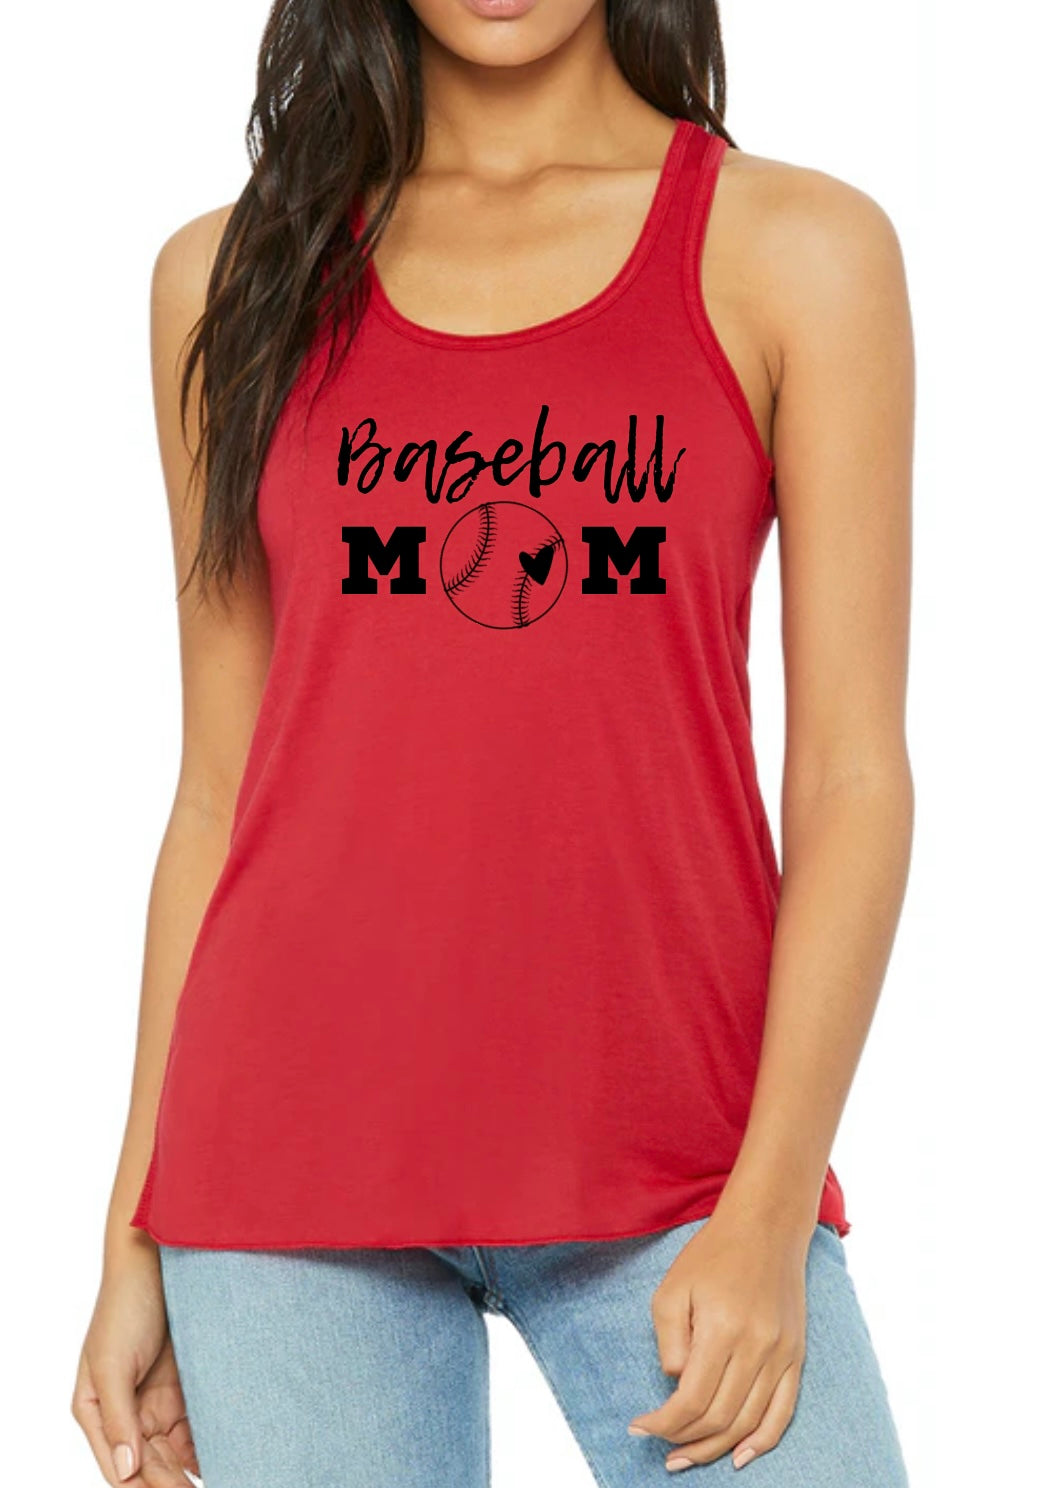 Baseball Mom Top